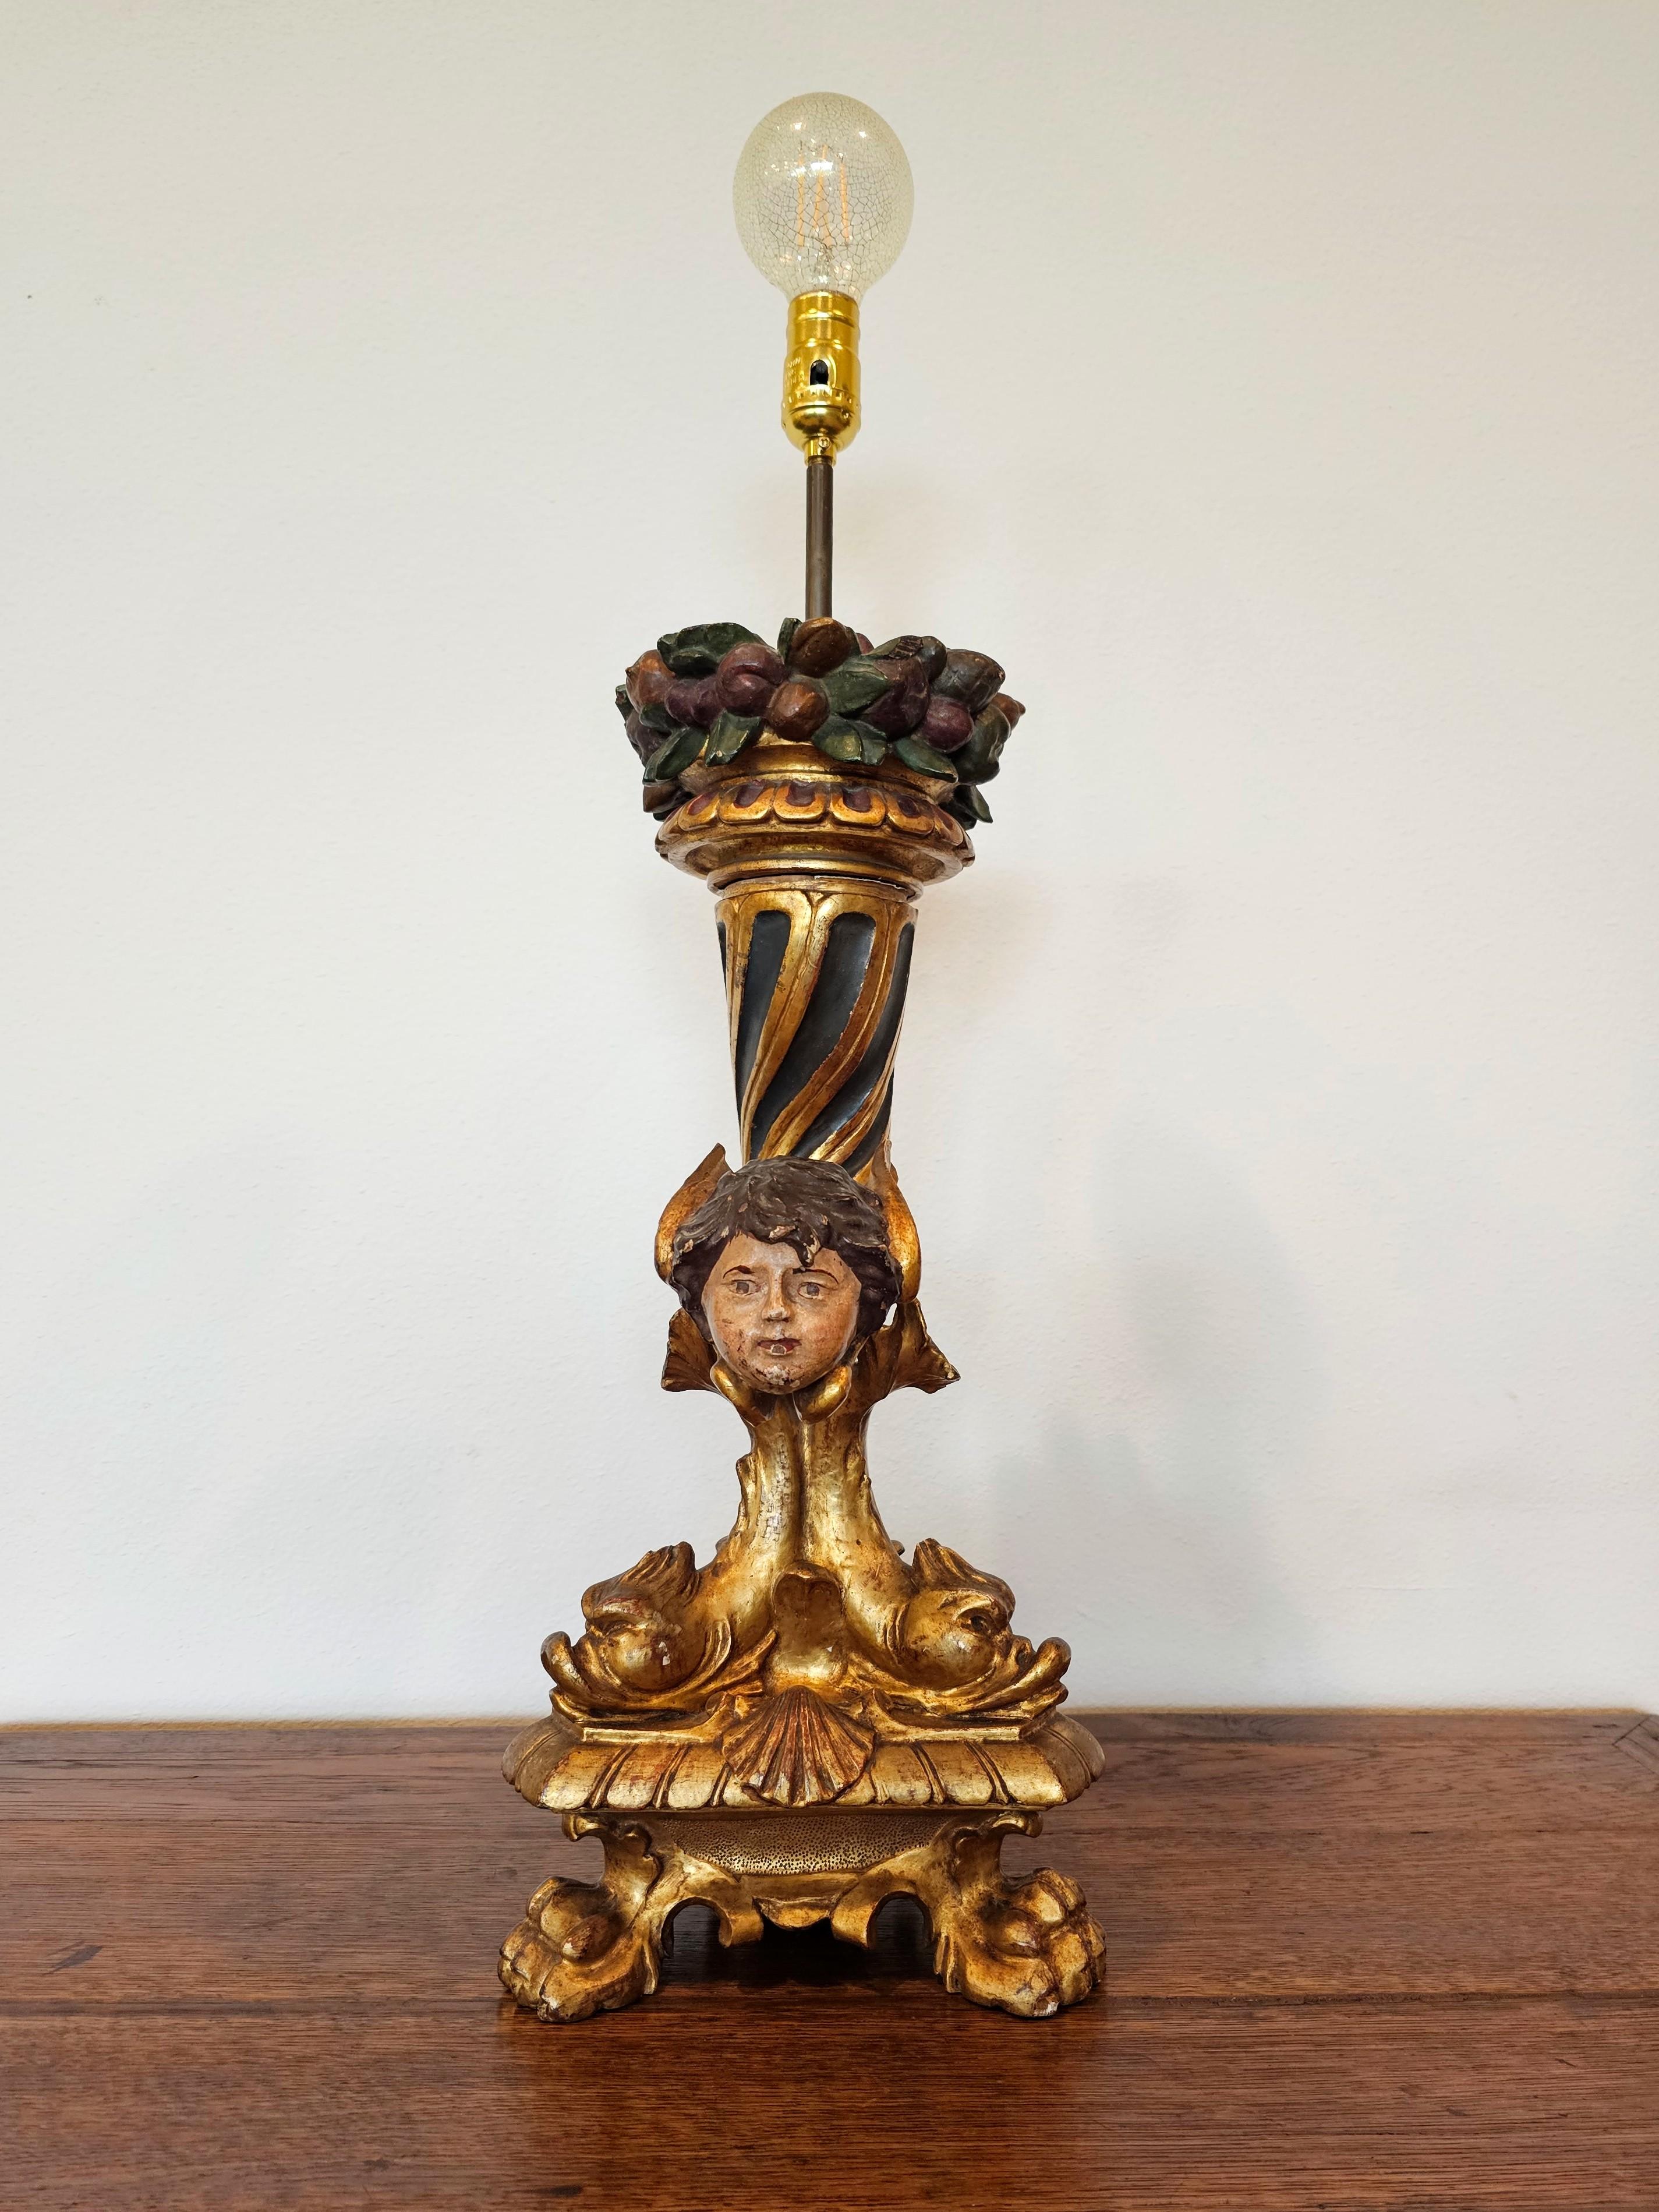 Ein fabelhafter figuraler Kerzenständer aus vergoldetem Holz der französischen Empirezeit, frühes 19. Jahrhundert, jetzt professionell elektrifiziert und als einflammige Tischlampe gestaltet.

Exquisit handgeschnitzt, gemeißelt, gessoed und